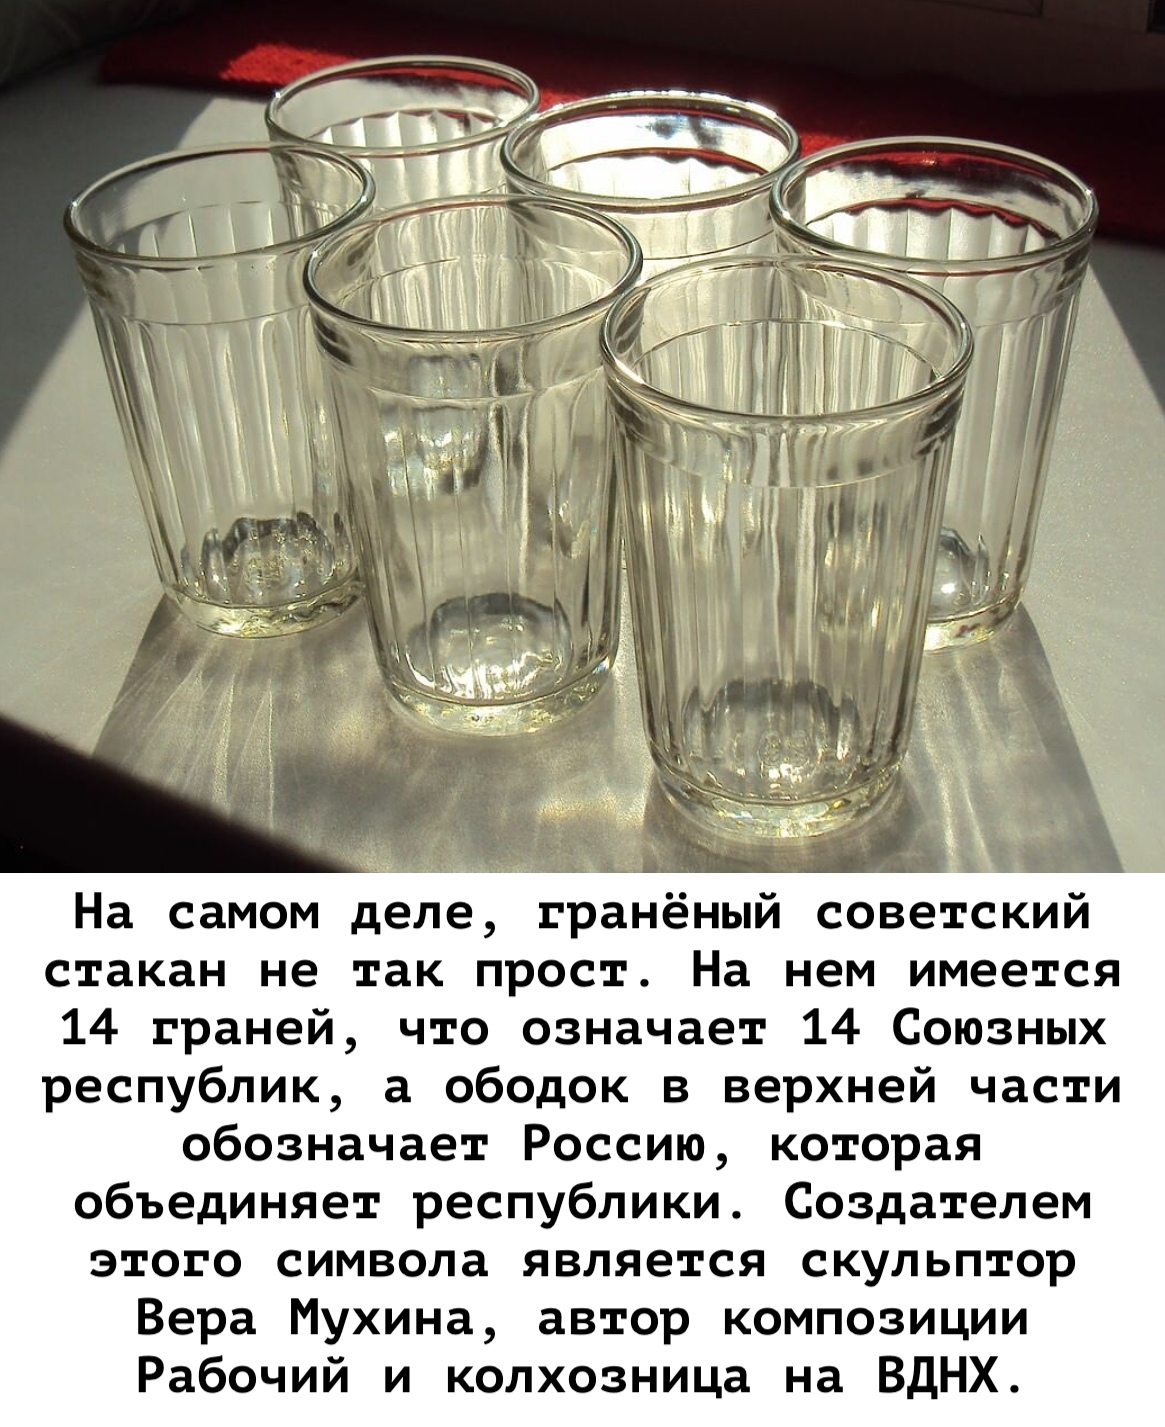 Советский граненый стакан — один из символов ссср: рассказываю кто его придумал и что означало кол-во граней